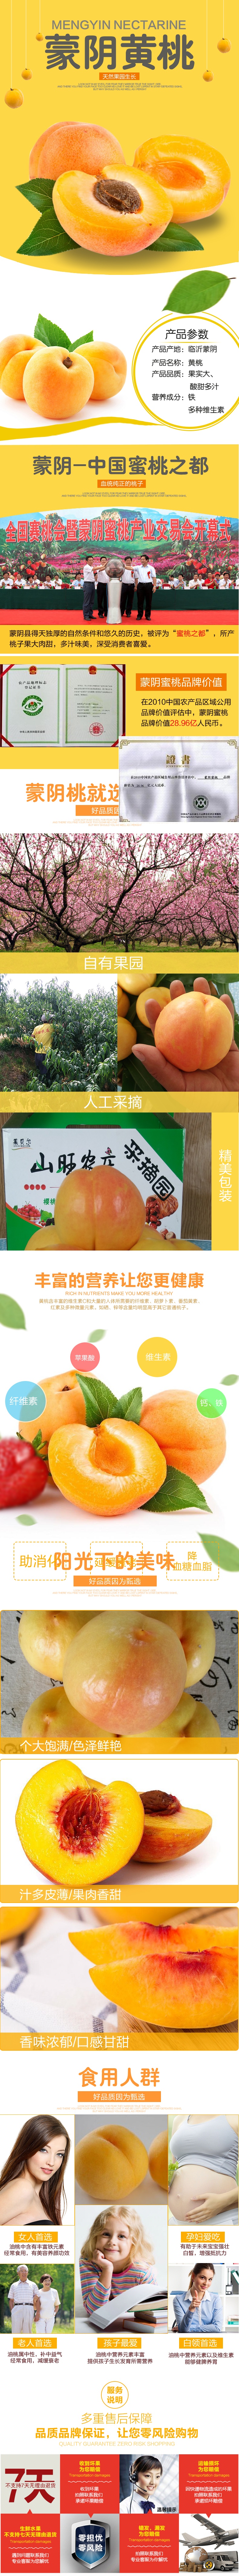 淘宝天猫年货节生鲜水果黄桃详情页psd模板